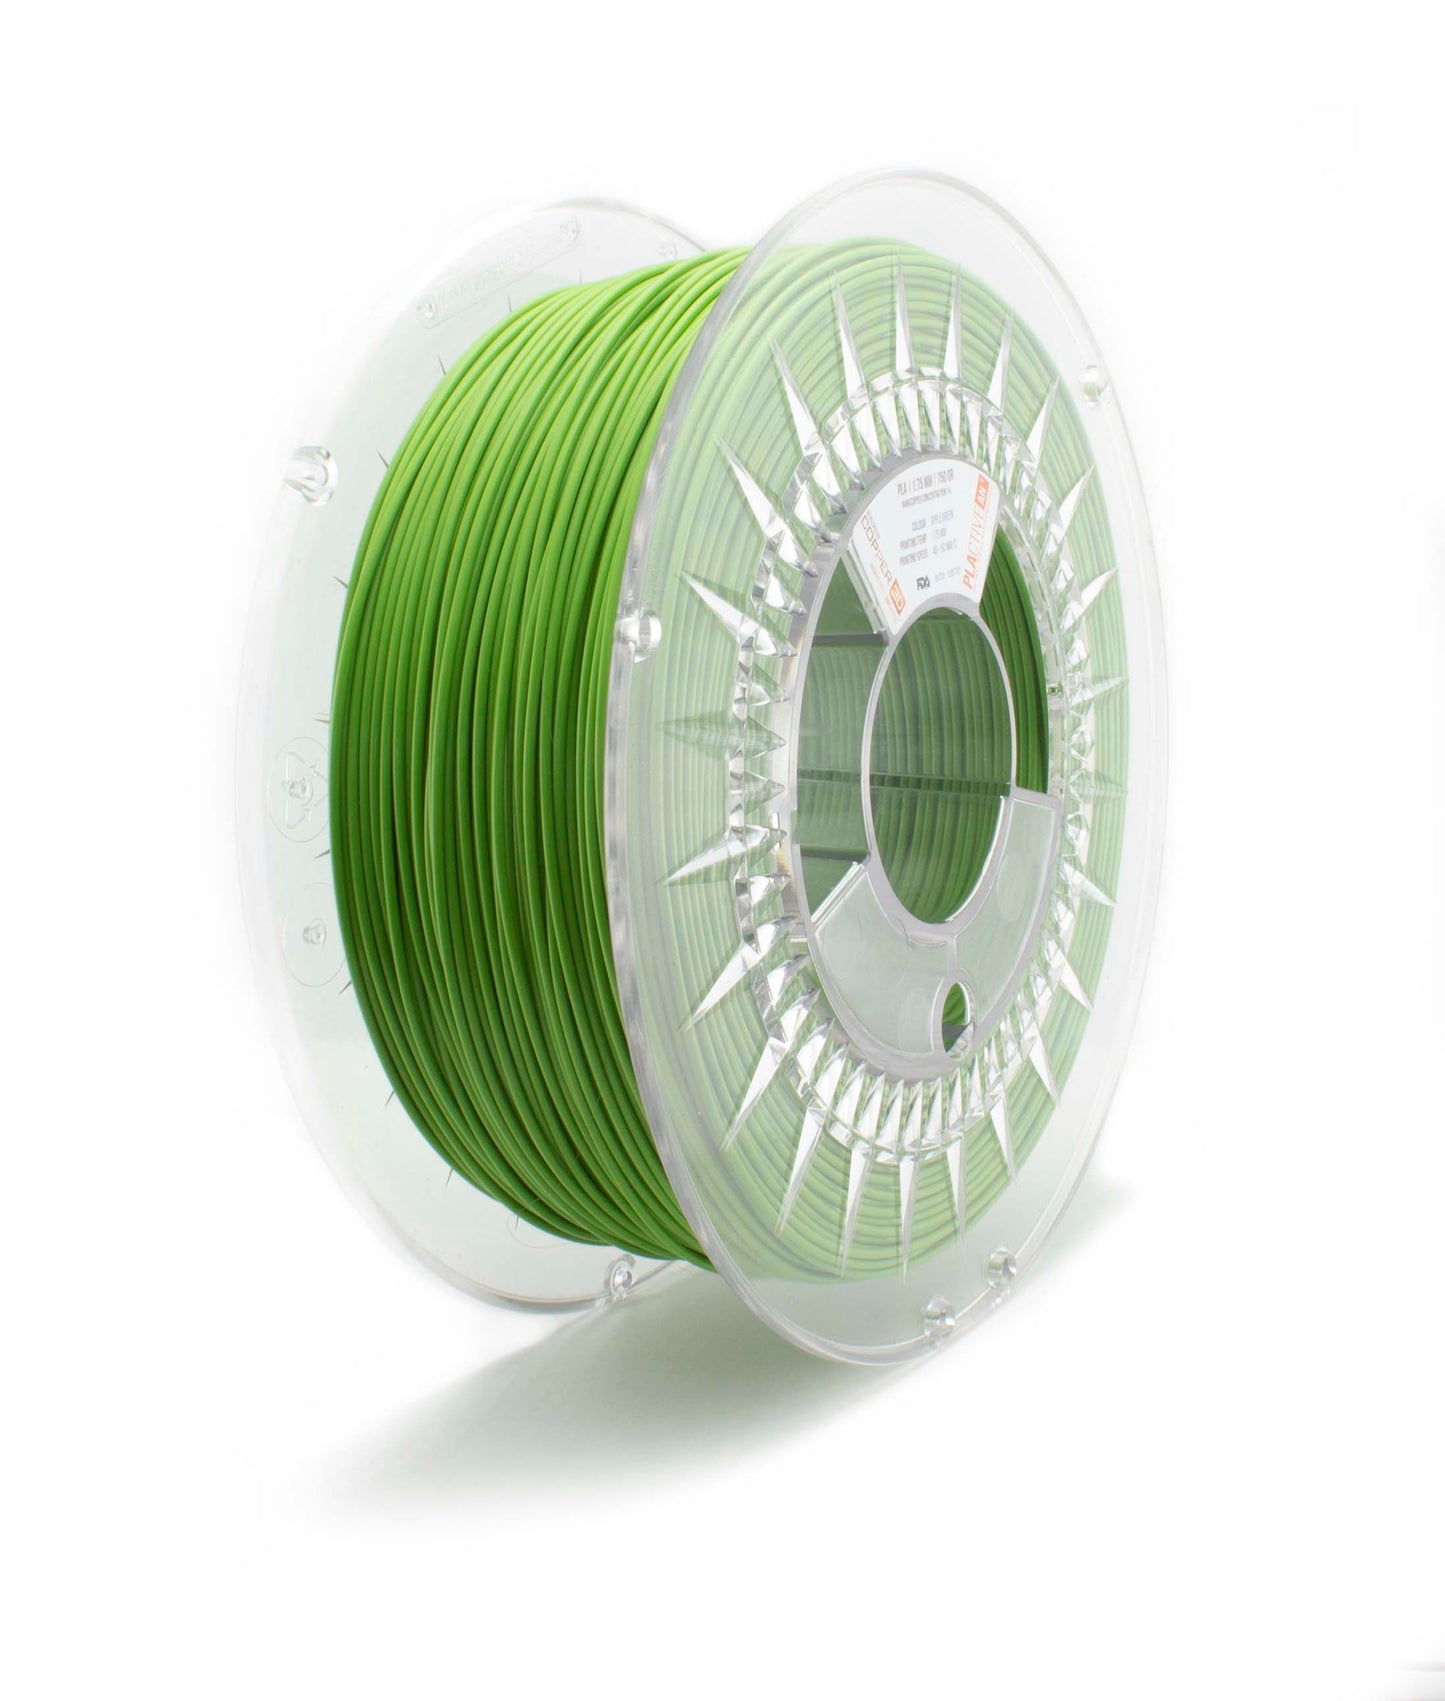 PLA Filament Copper 3D PLActive - Innovative Antibacterial 1.75mm 750gram Apple Green Color 3D Printer Filament